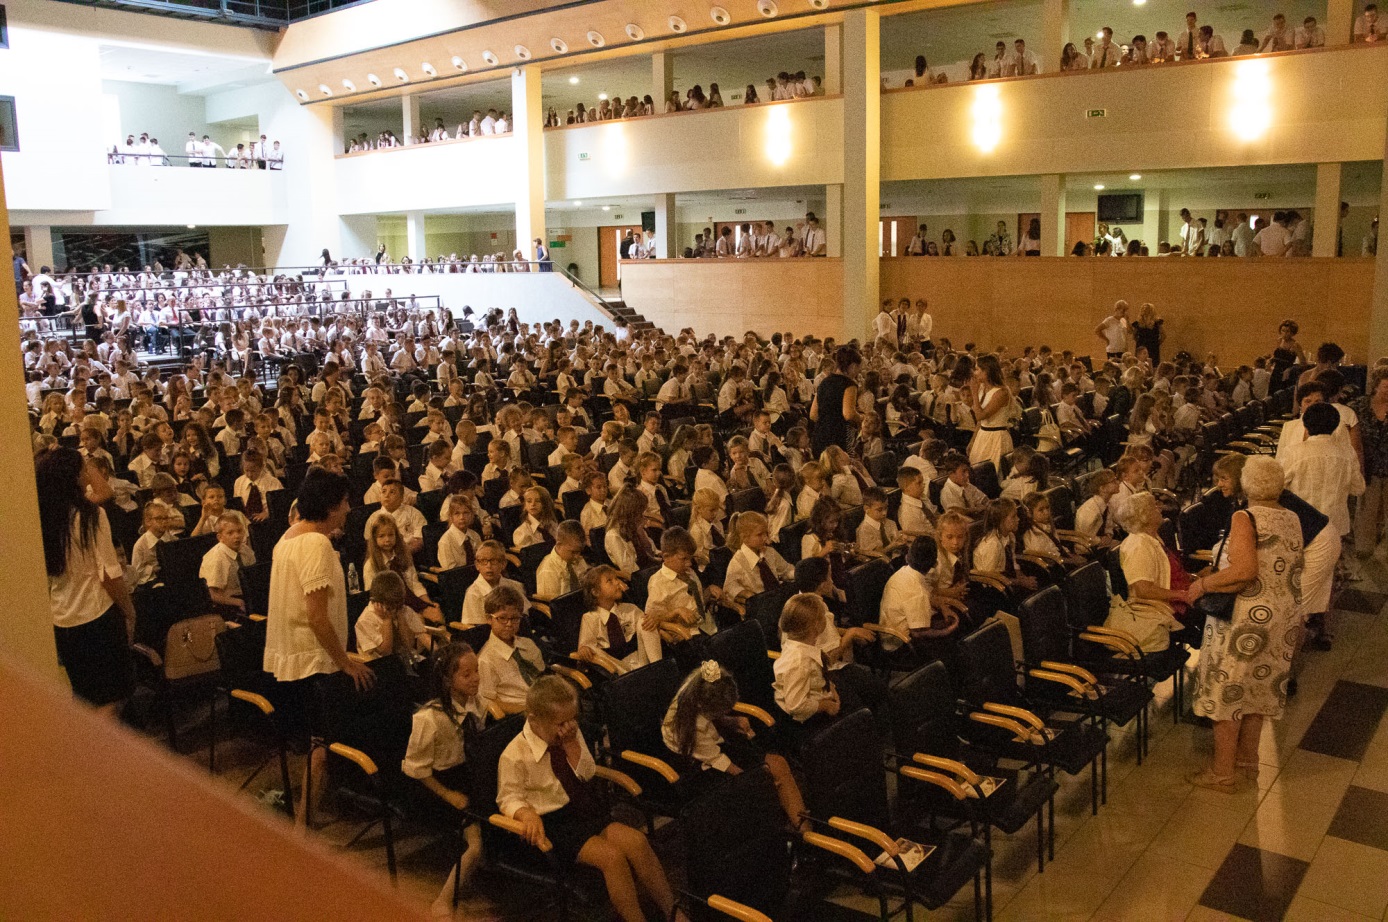 Az iskola 1150 diákja benépesítette az ünnepség helyszínéül szolgáló impozáns Kodály Zoltán Kulturális Központot